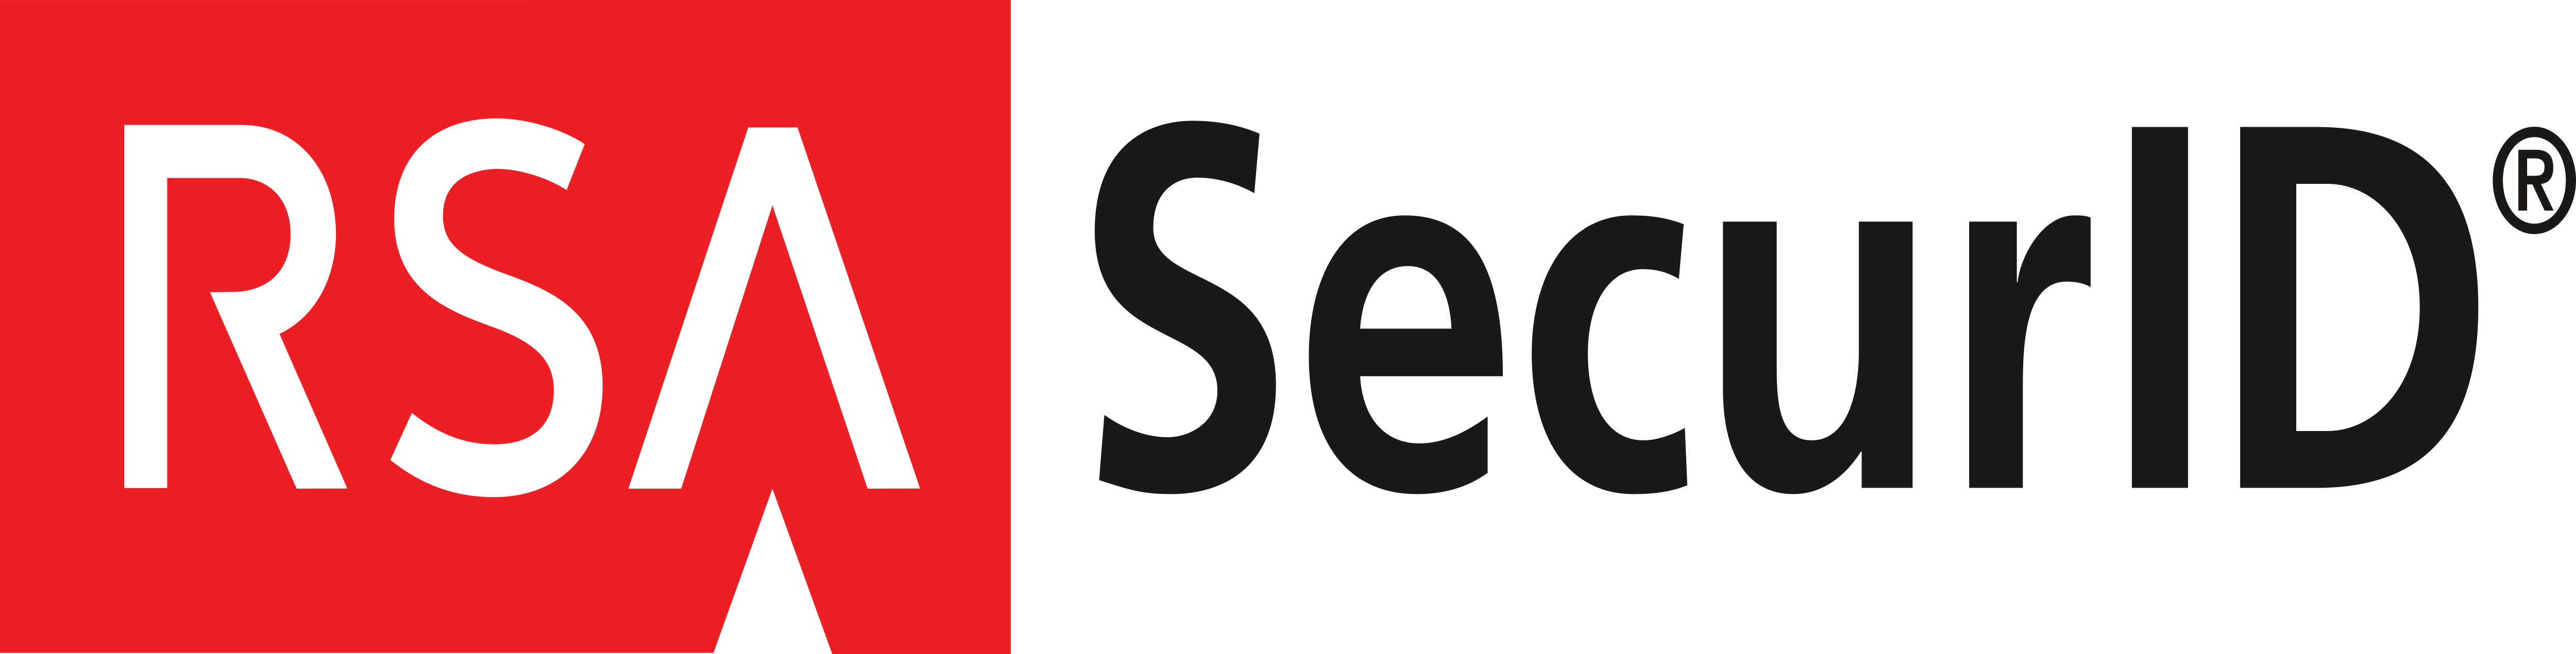 RSA Security – Logos Download